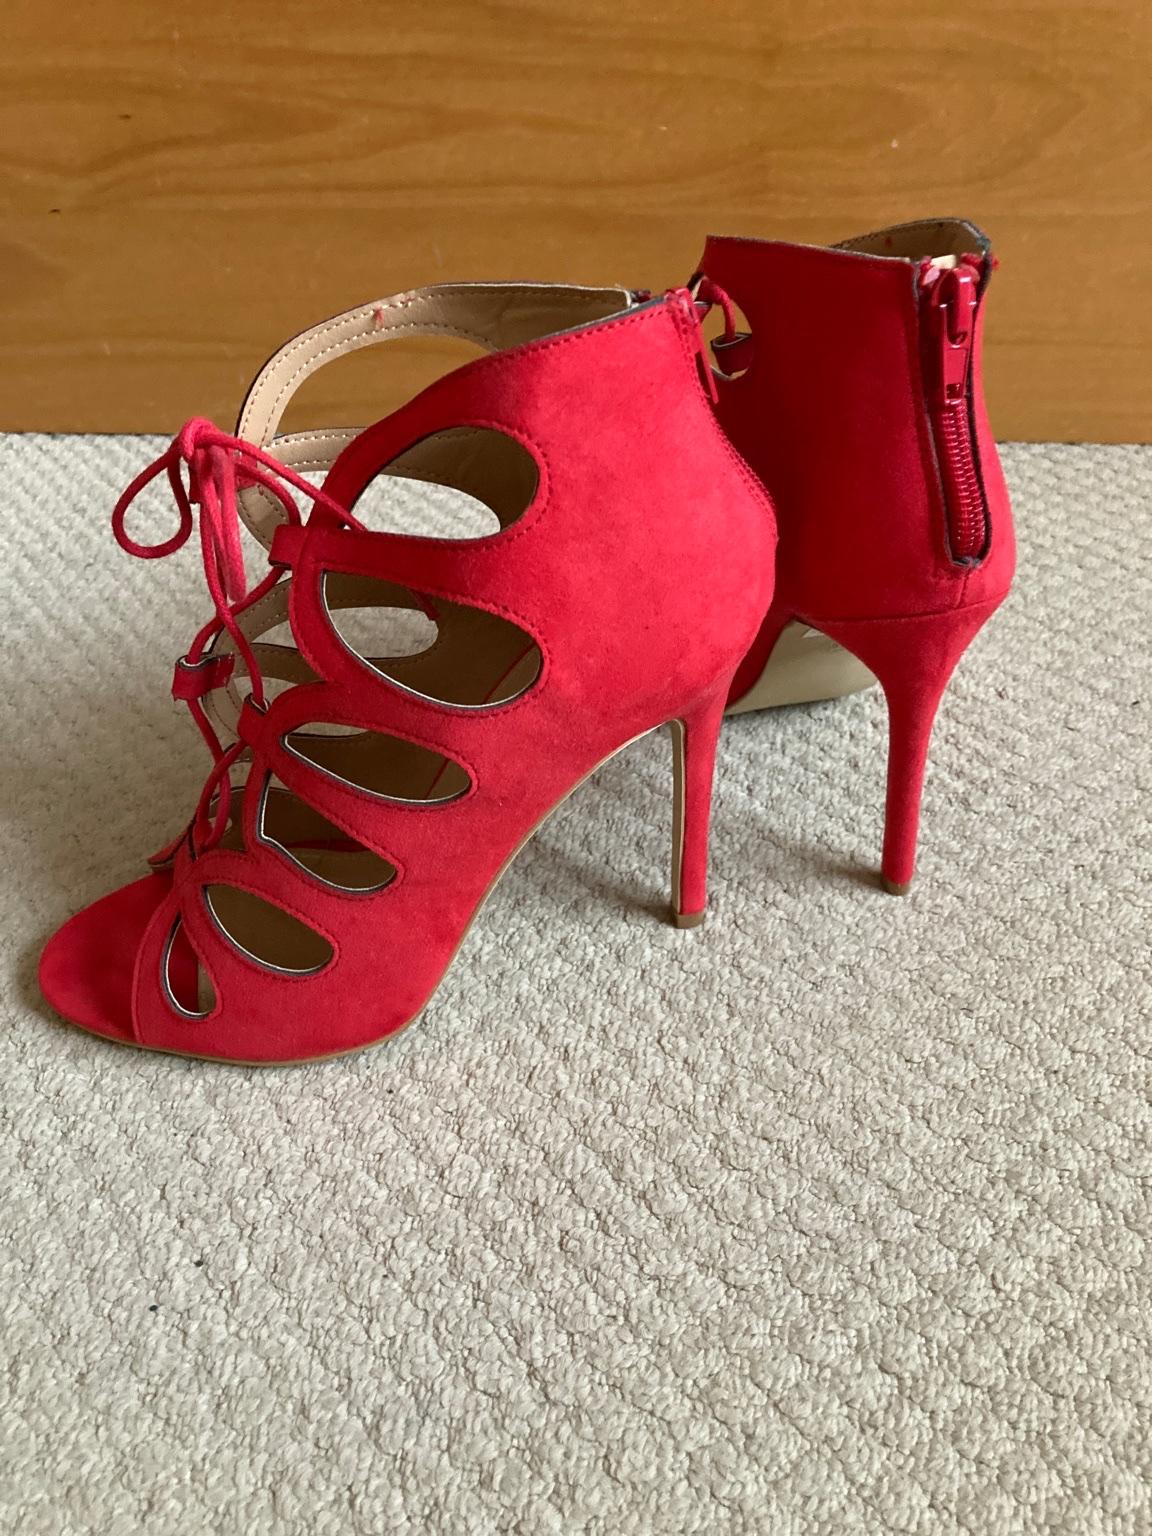 Ladies Red Shoes Size 5 - Brand New in RM3 Havering für £ 3,00 zum ...